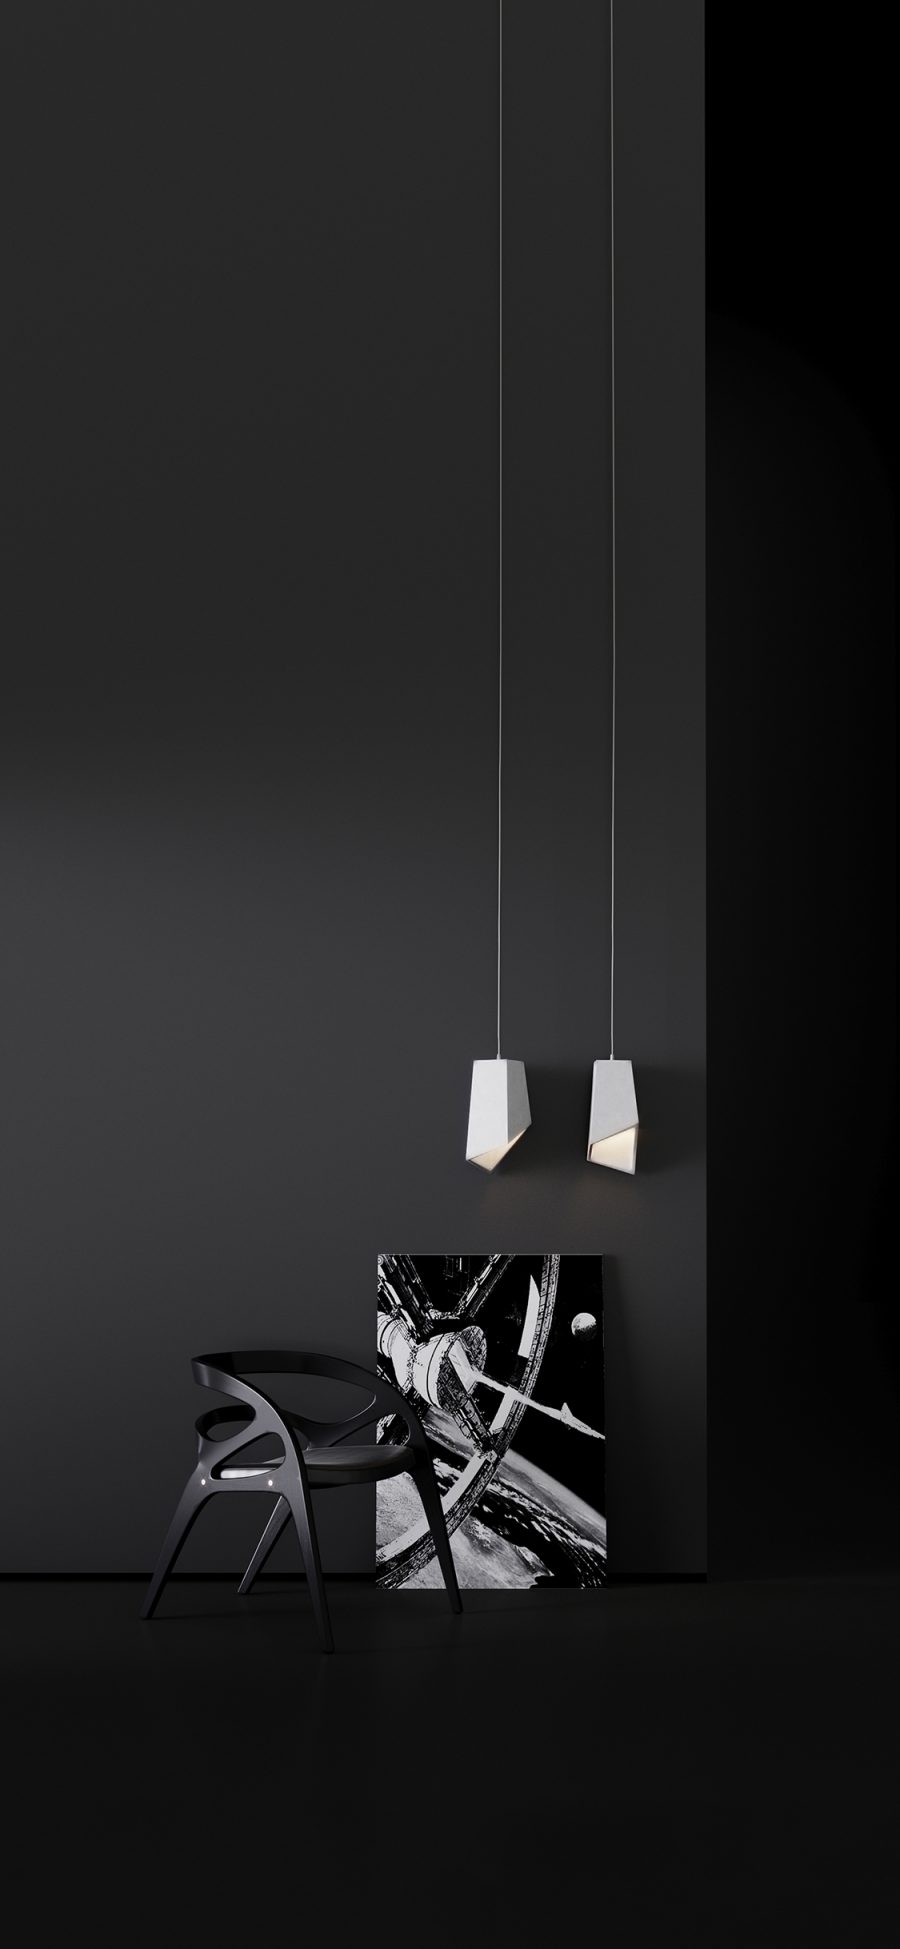 [2436×1125]家居 设计 吊灯 椅子 黑白简约 苹果手机壁纸图片